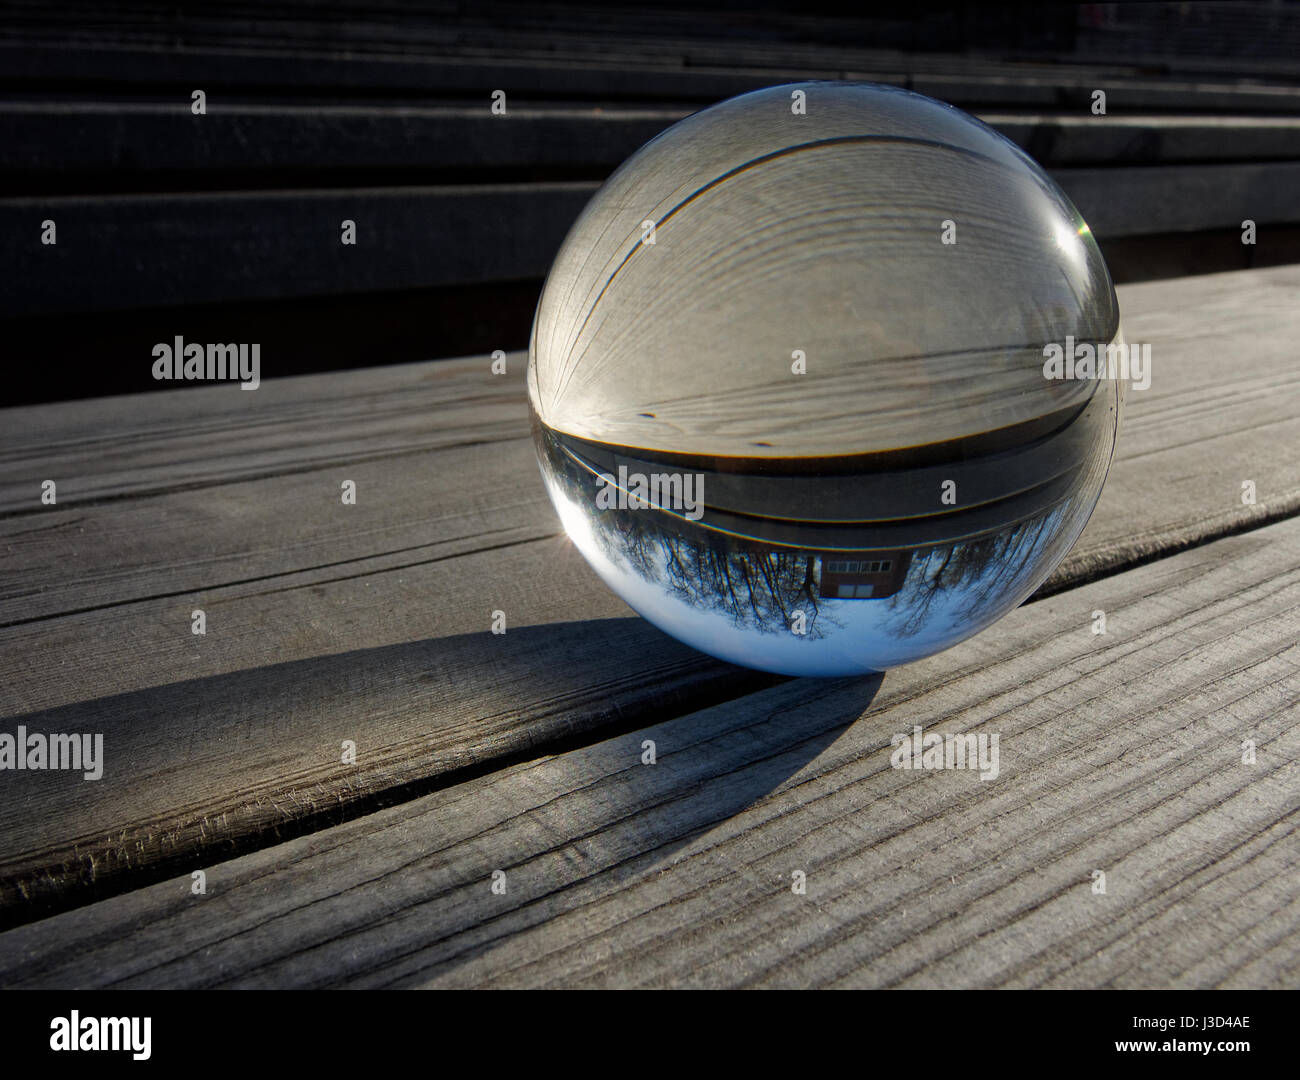 Fondos y texturas: bola de cristal sobre una mesa de madera, parte de un paisaje interior Foto de stock